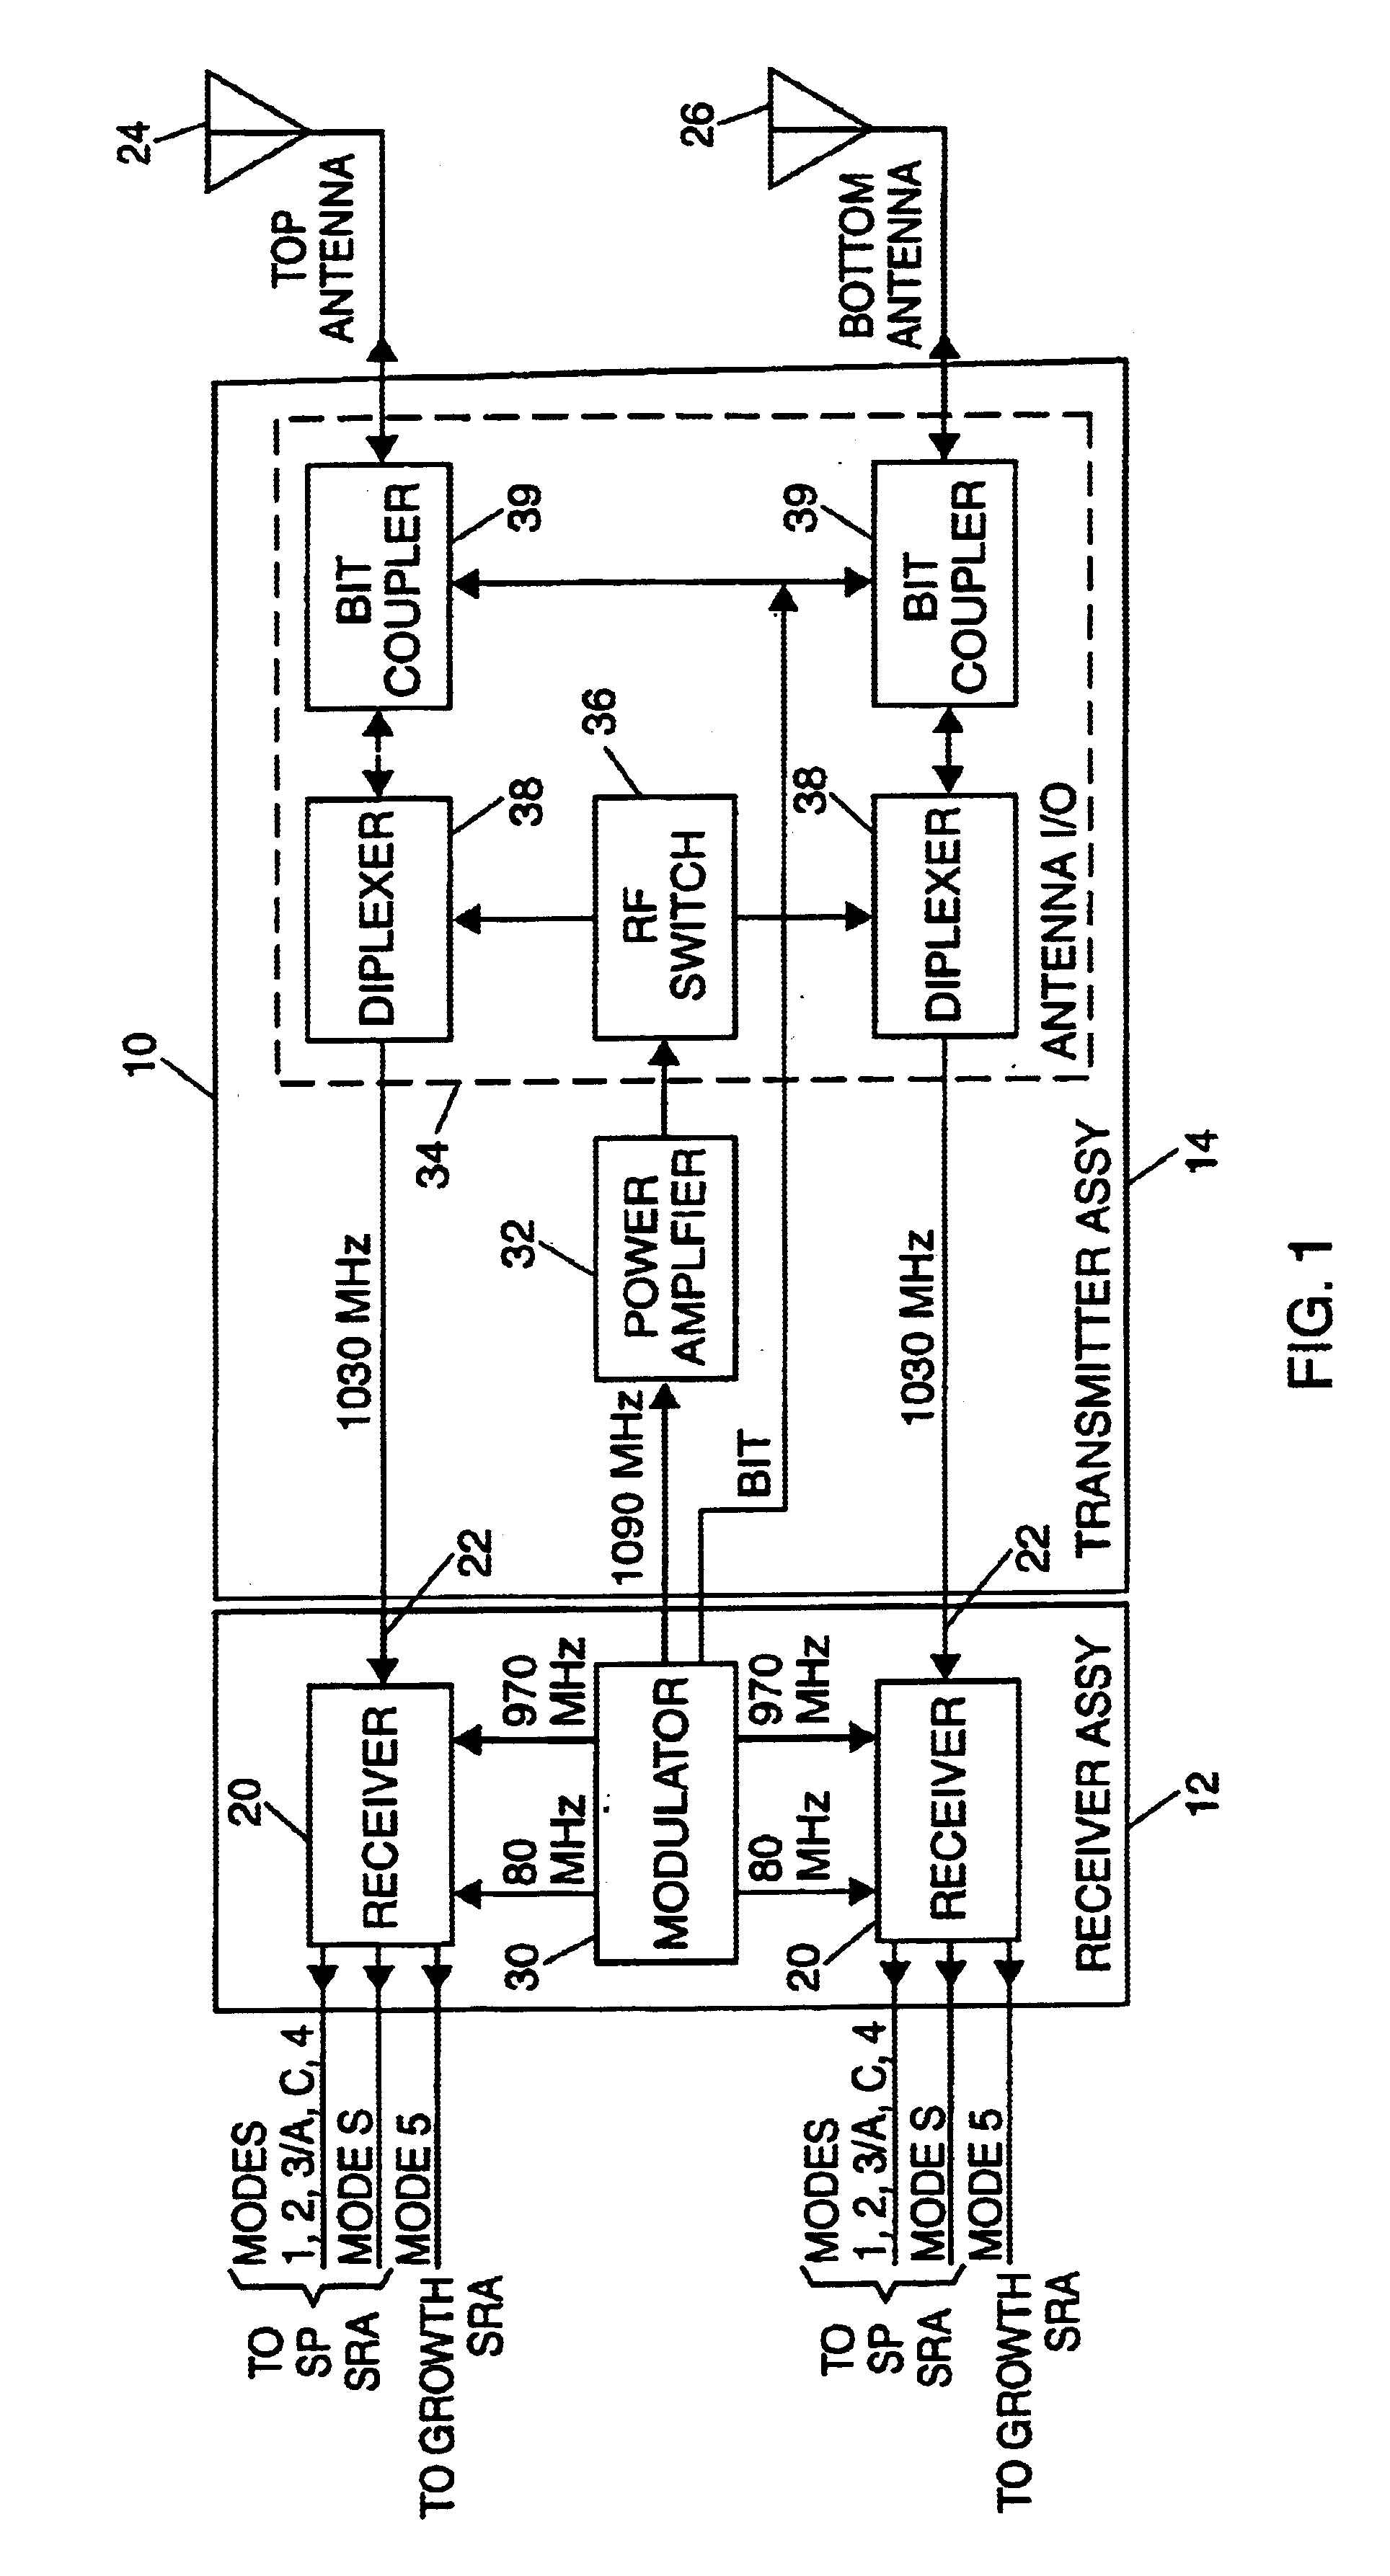 Multi-mode IFF receiver architecture